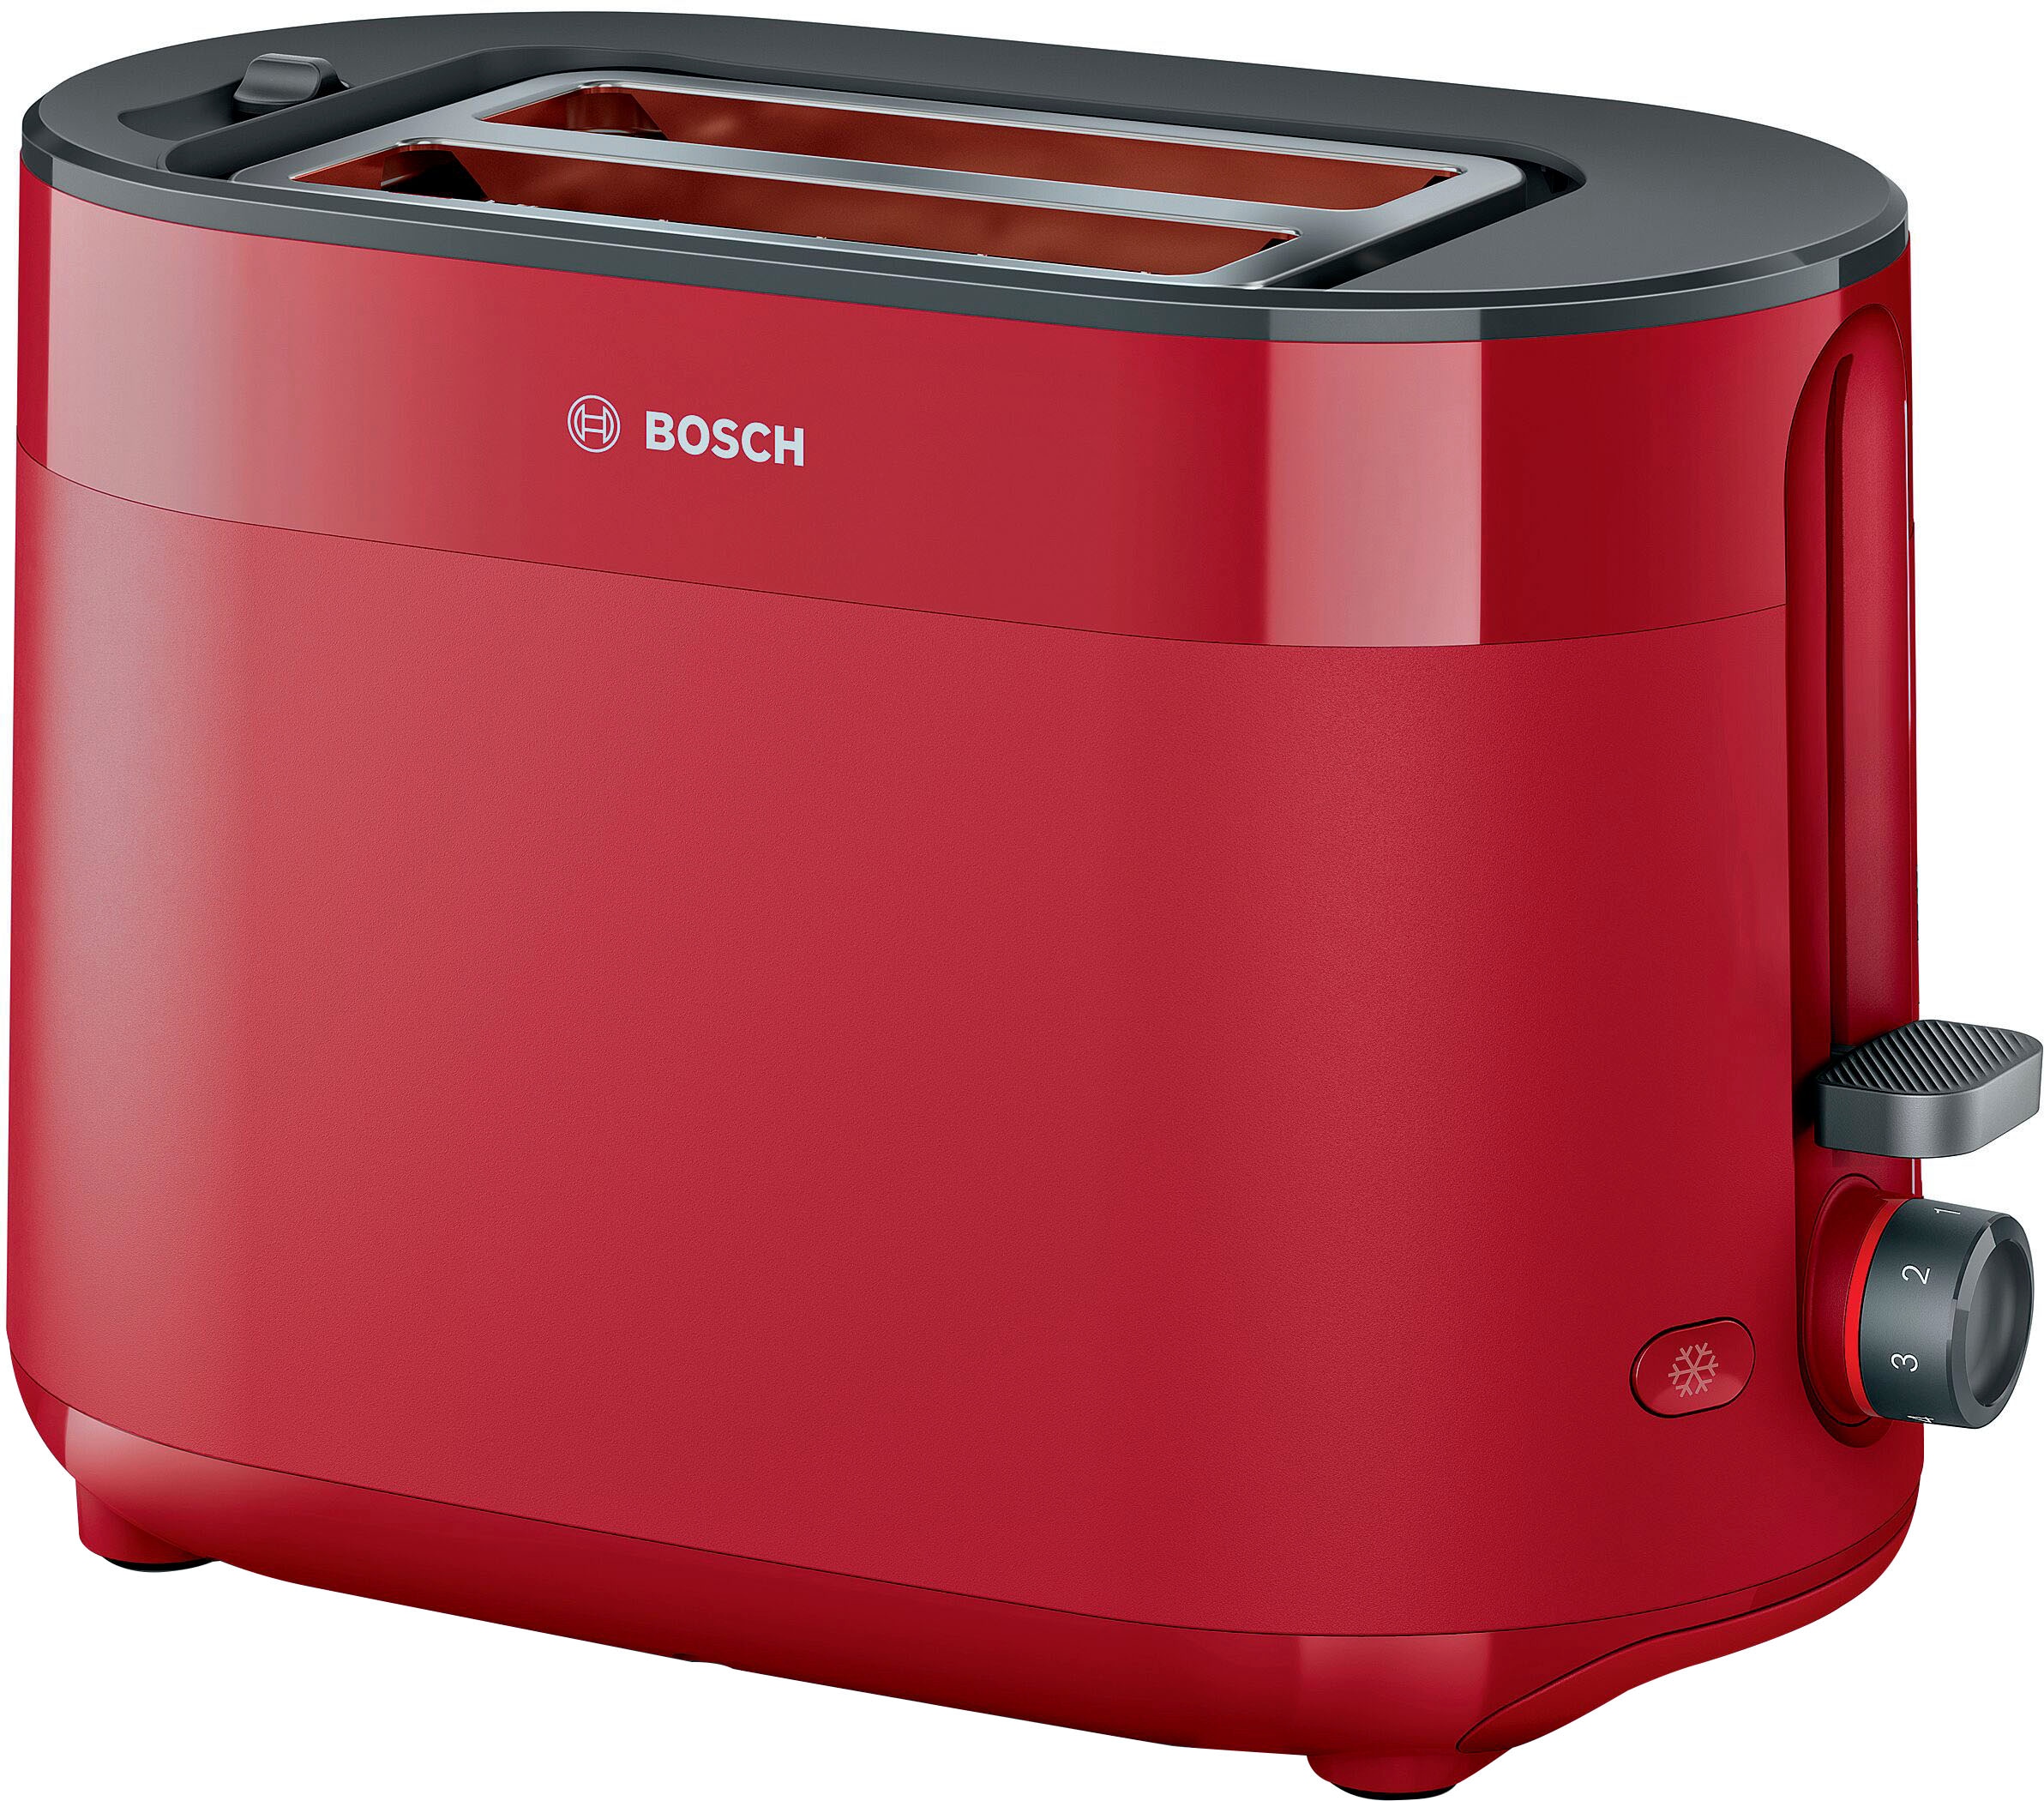 Bosch Toaster jetzt jetzt sein online Universal. Jeder ☆ kaufen hat